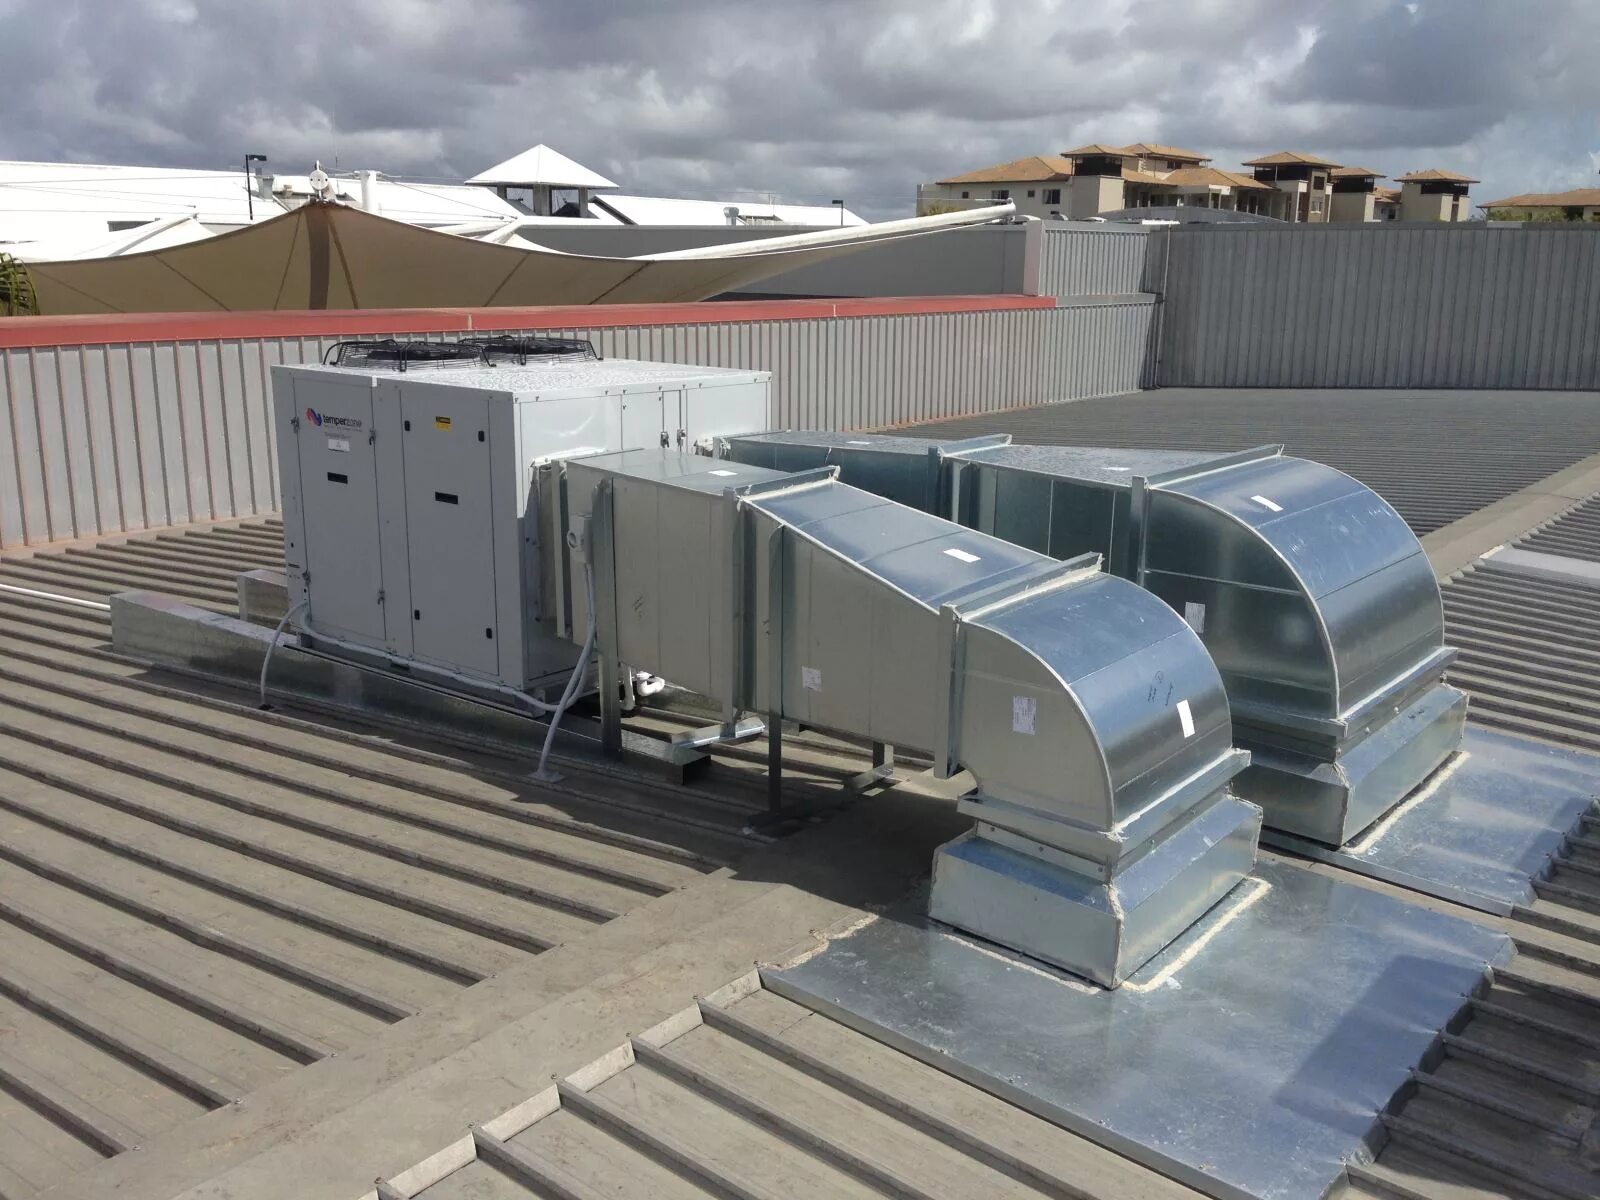 Моноблок на крышу. Система вентиляции Air Ventilation. Центральная система вентиляции Rooftop (4000 m3/h 500pa). Воздуховоды на кровле. Воздуховоды для вентиляции на кровле.